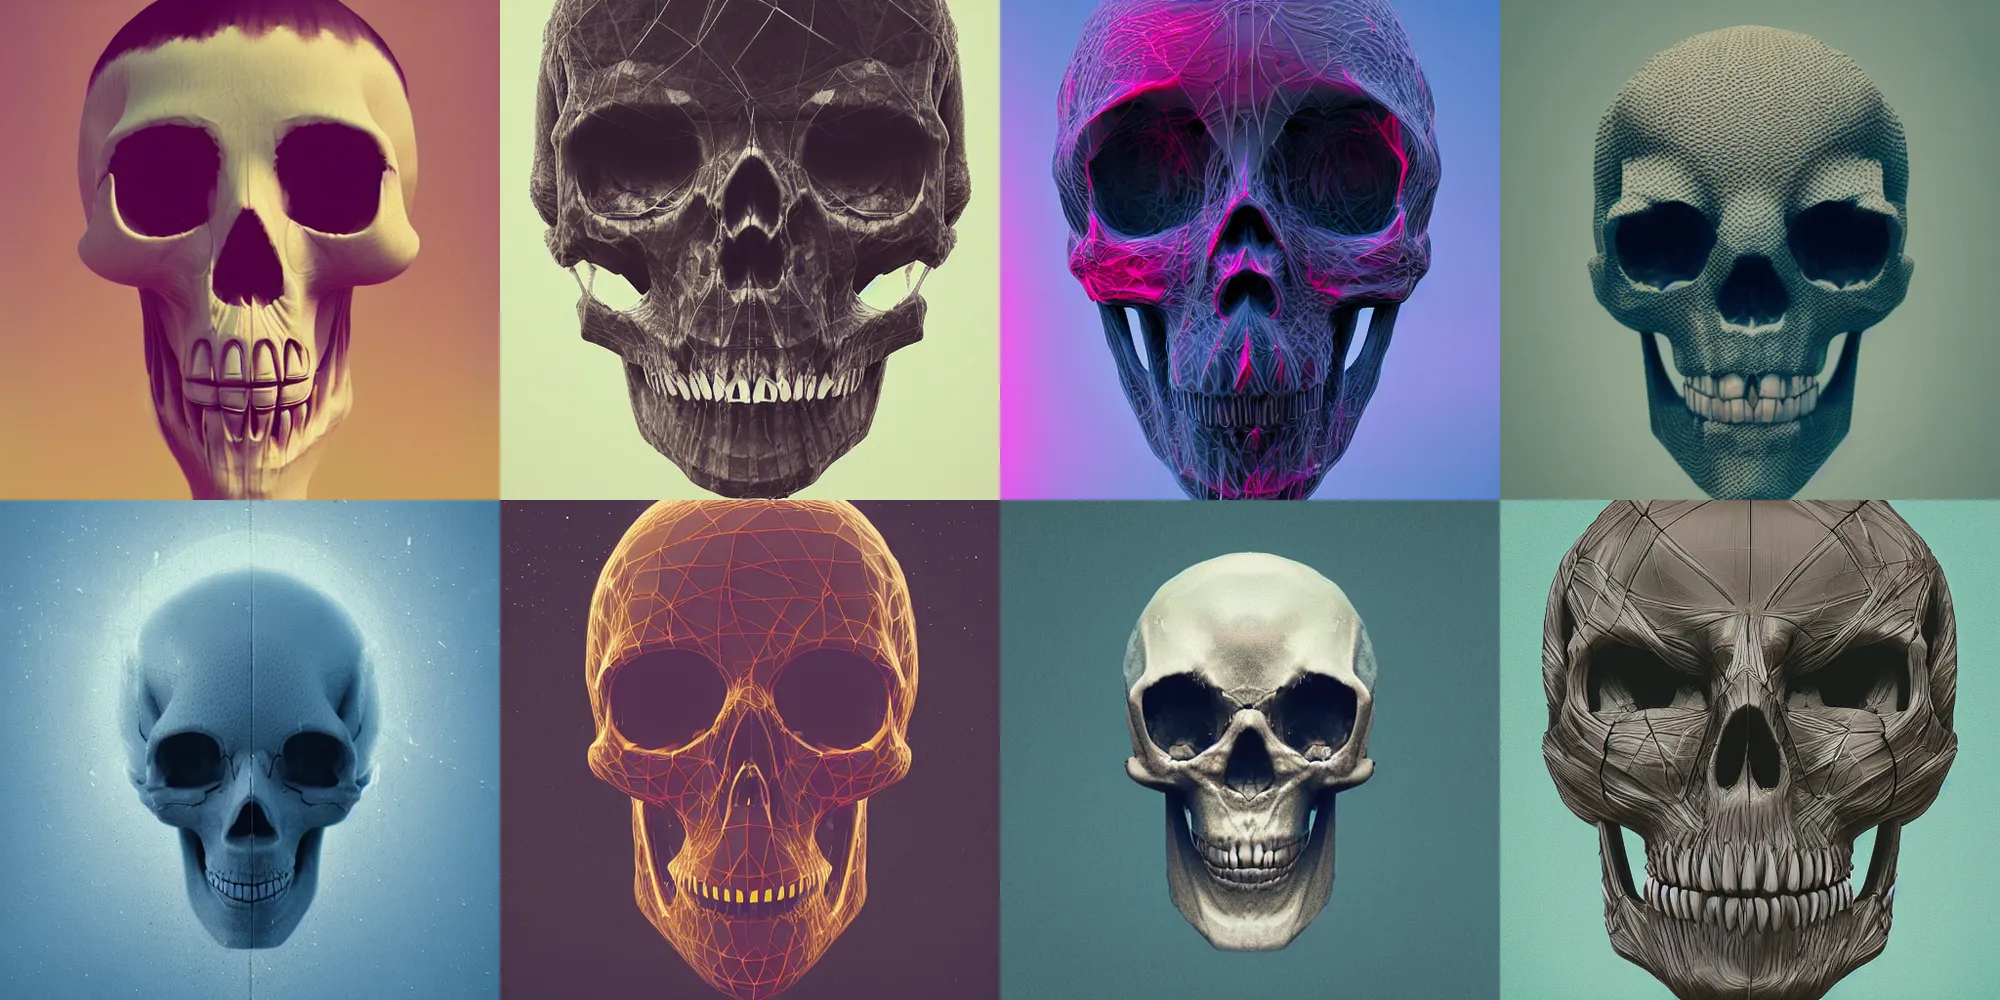 Prompt: webbed skull, digital art, 4K, by mike winkelmann